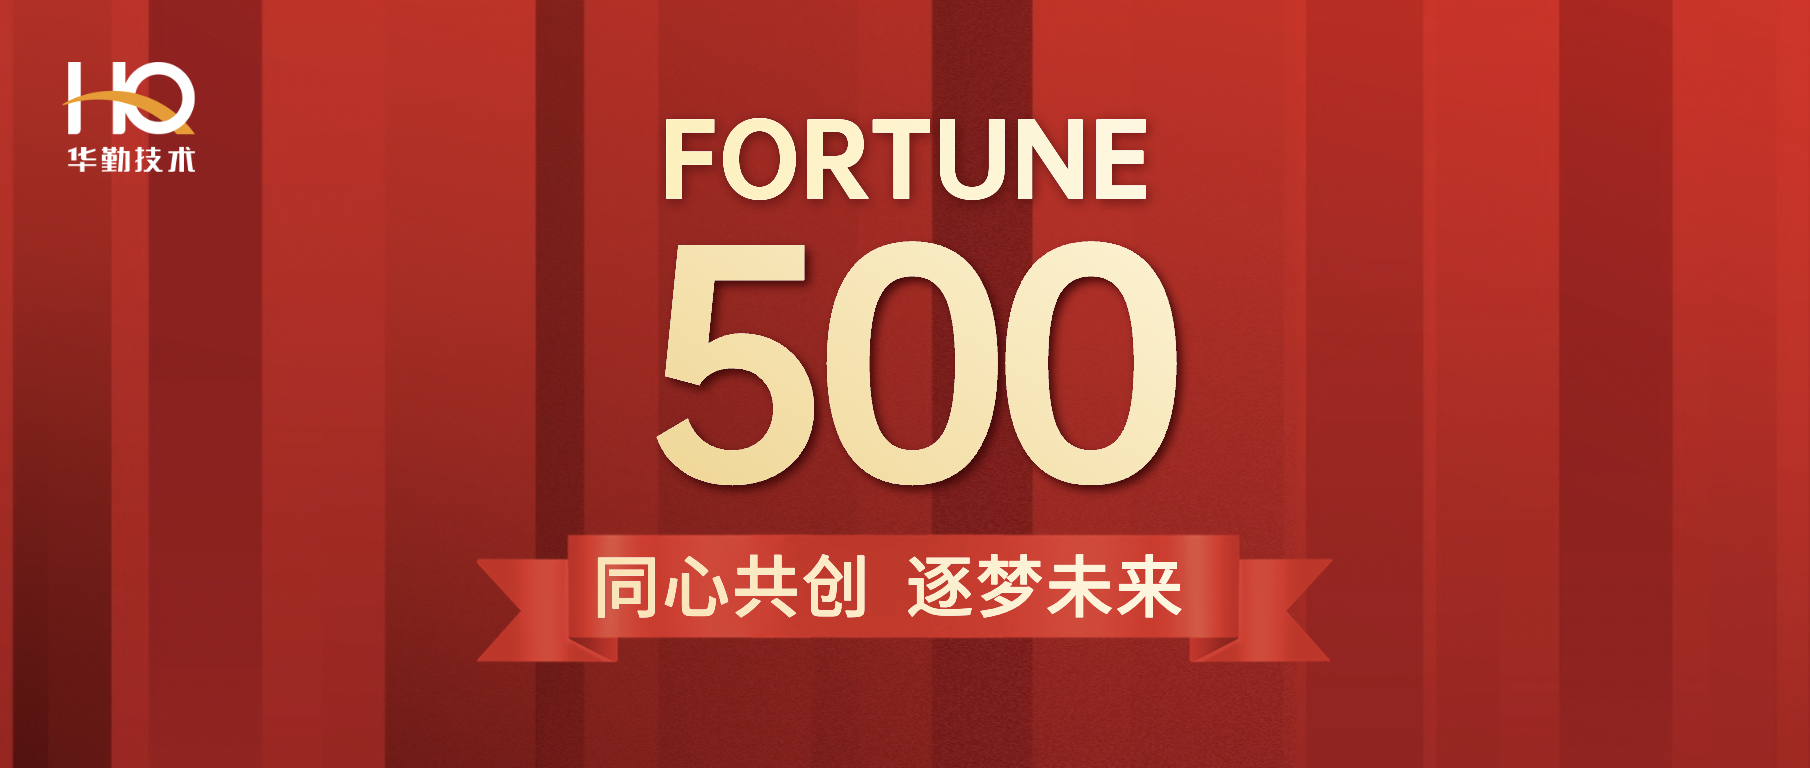 华勤技术首登《财富》中国500强位列第213位